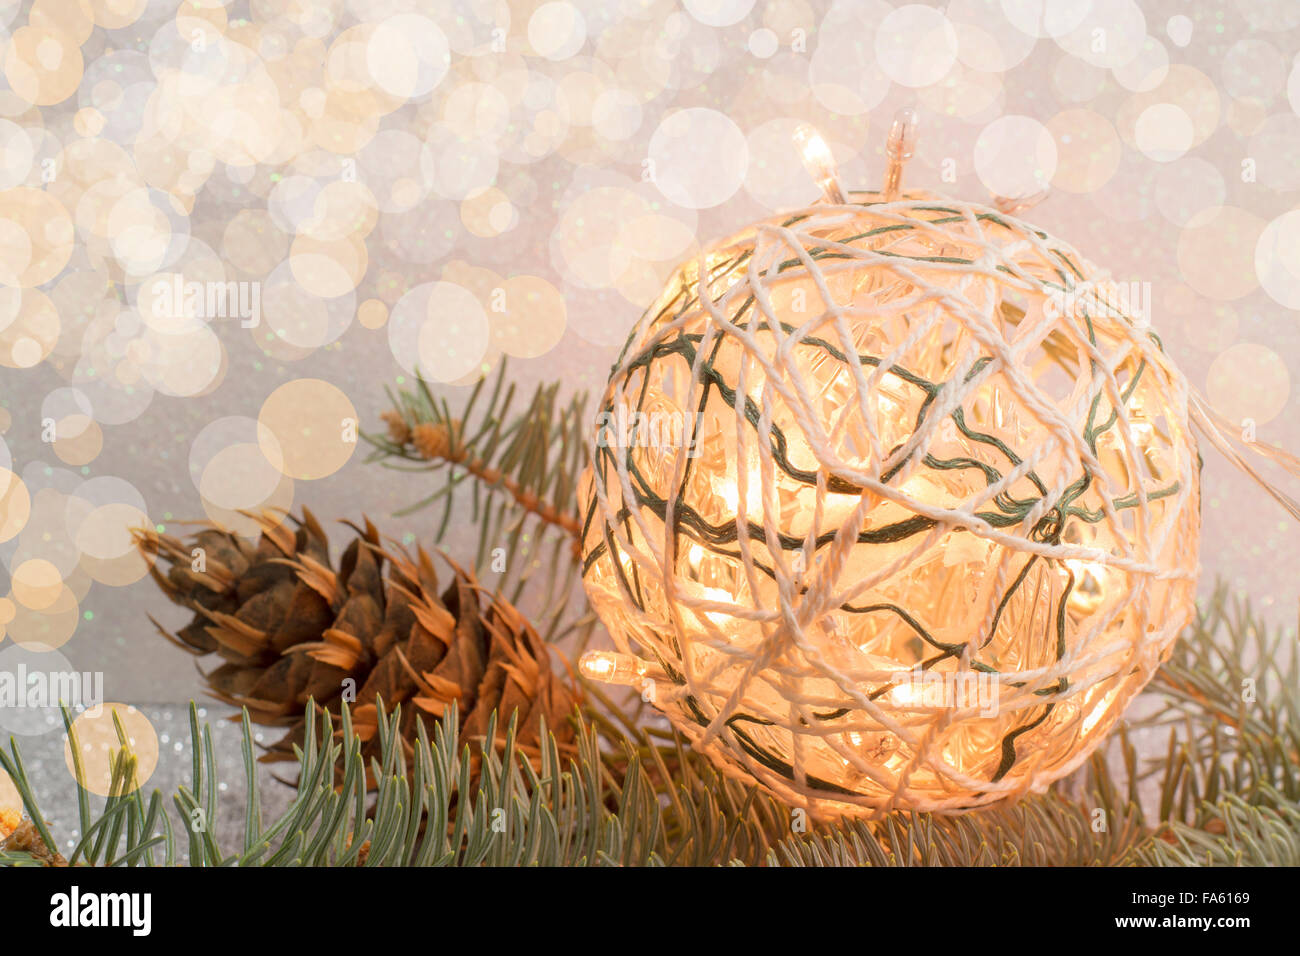 Décoration de Noël fait maison avec les ampoules et les cônes de pin Banque D'Images